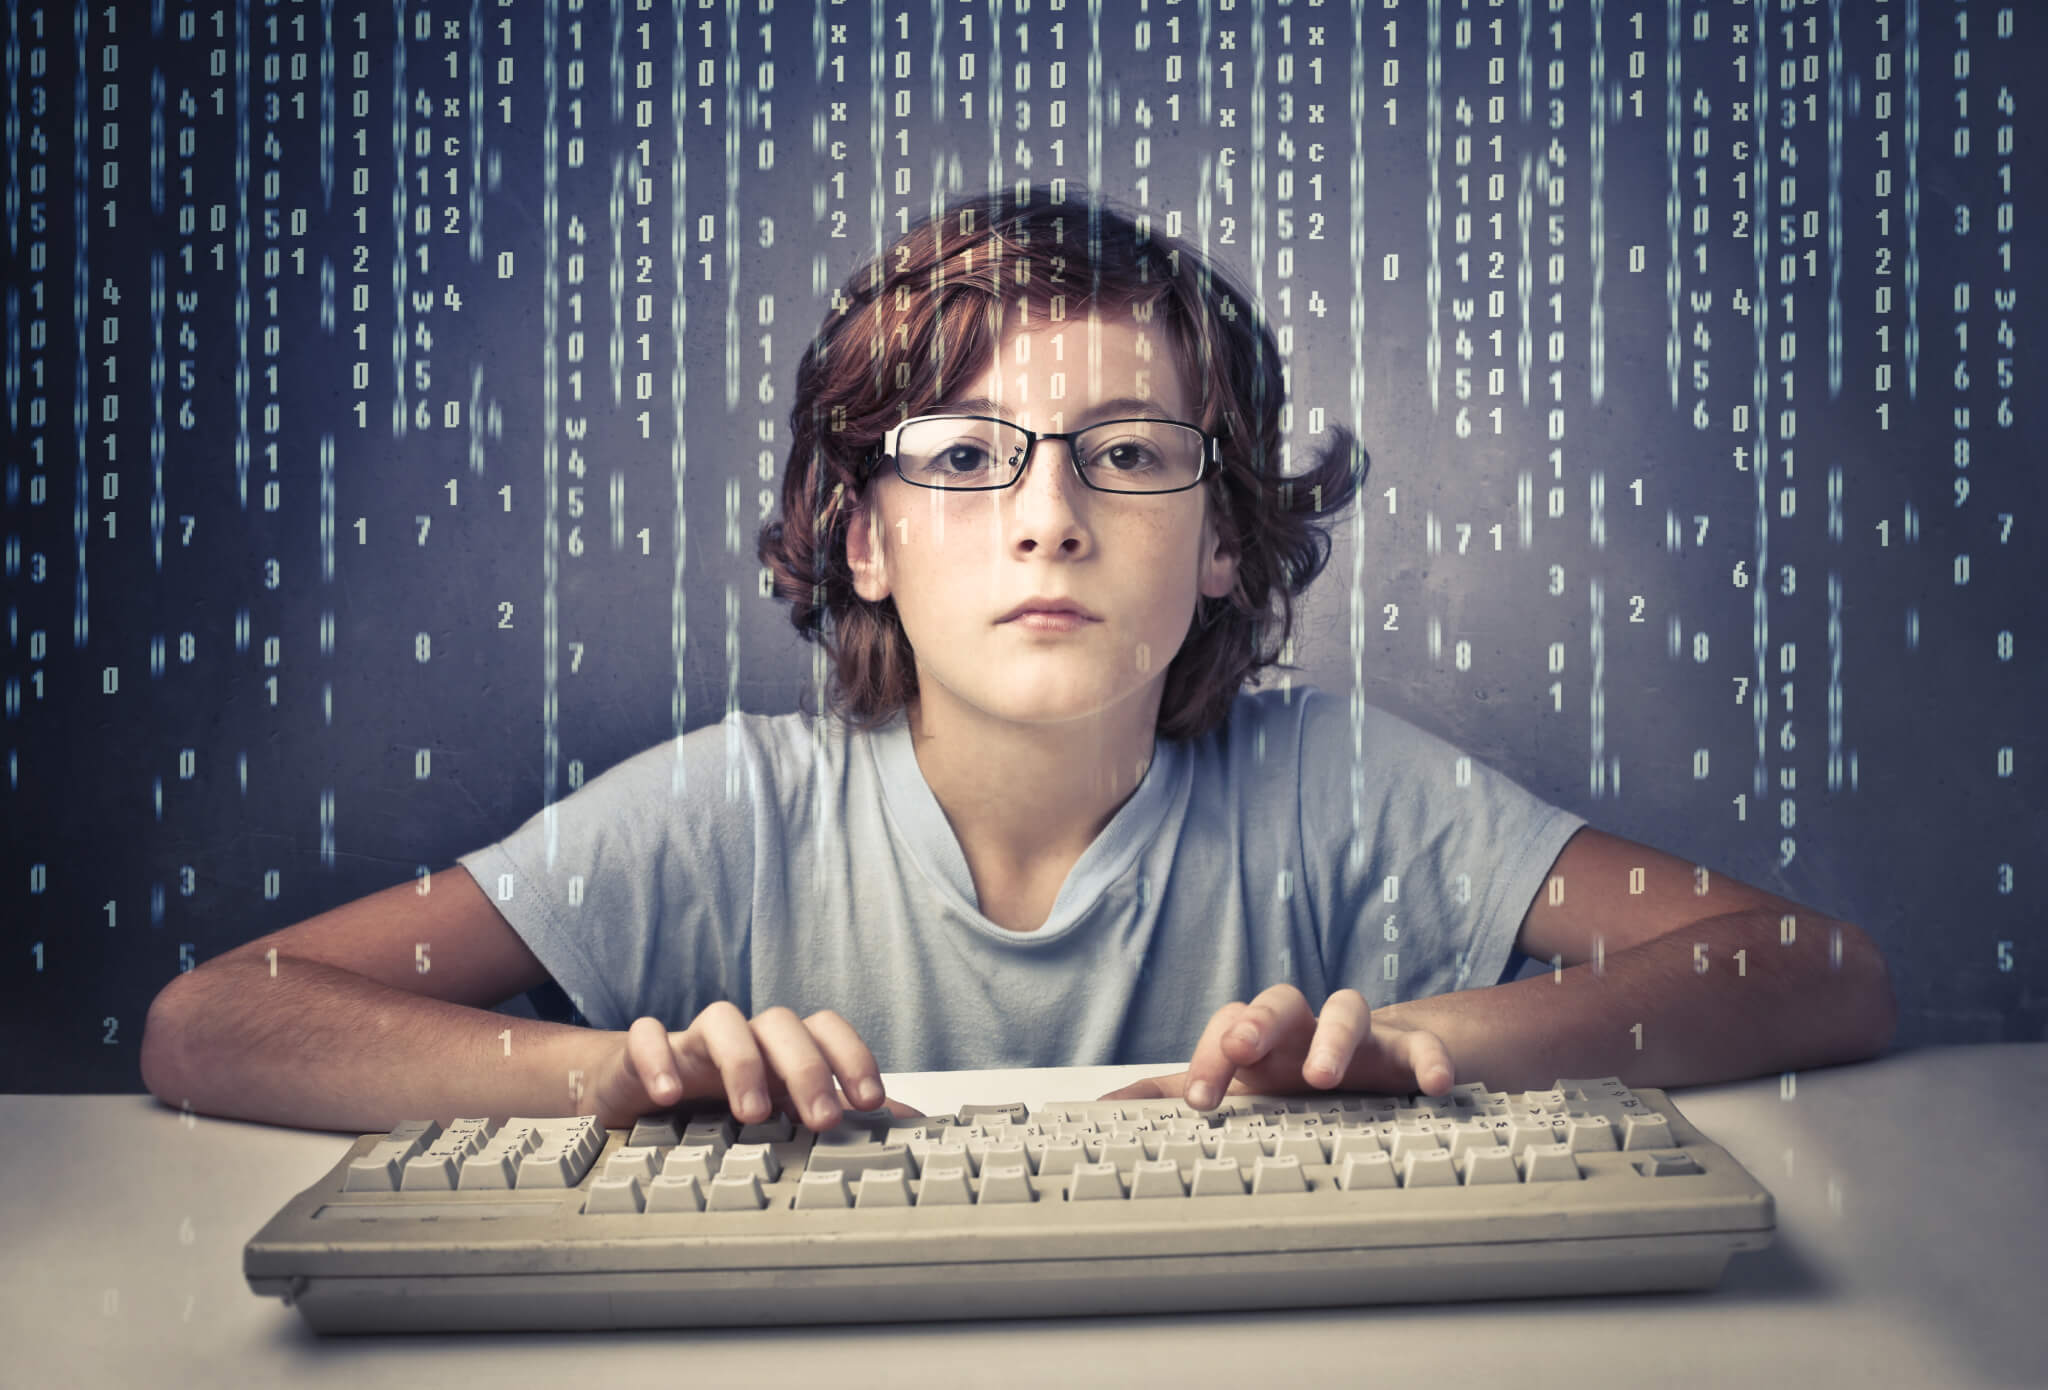 Социальные сети поколения. Подросток и компьютер. Юный программист. Компьютерные игры для детей. Интернет зависимость.